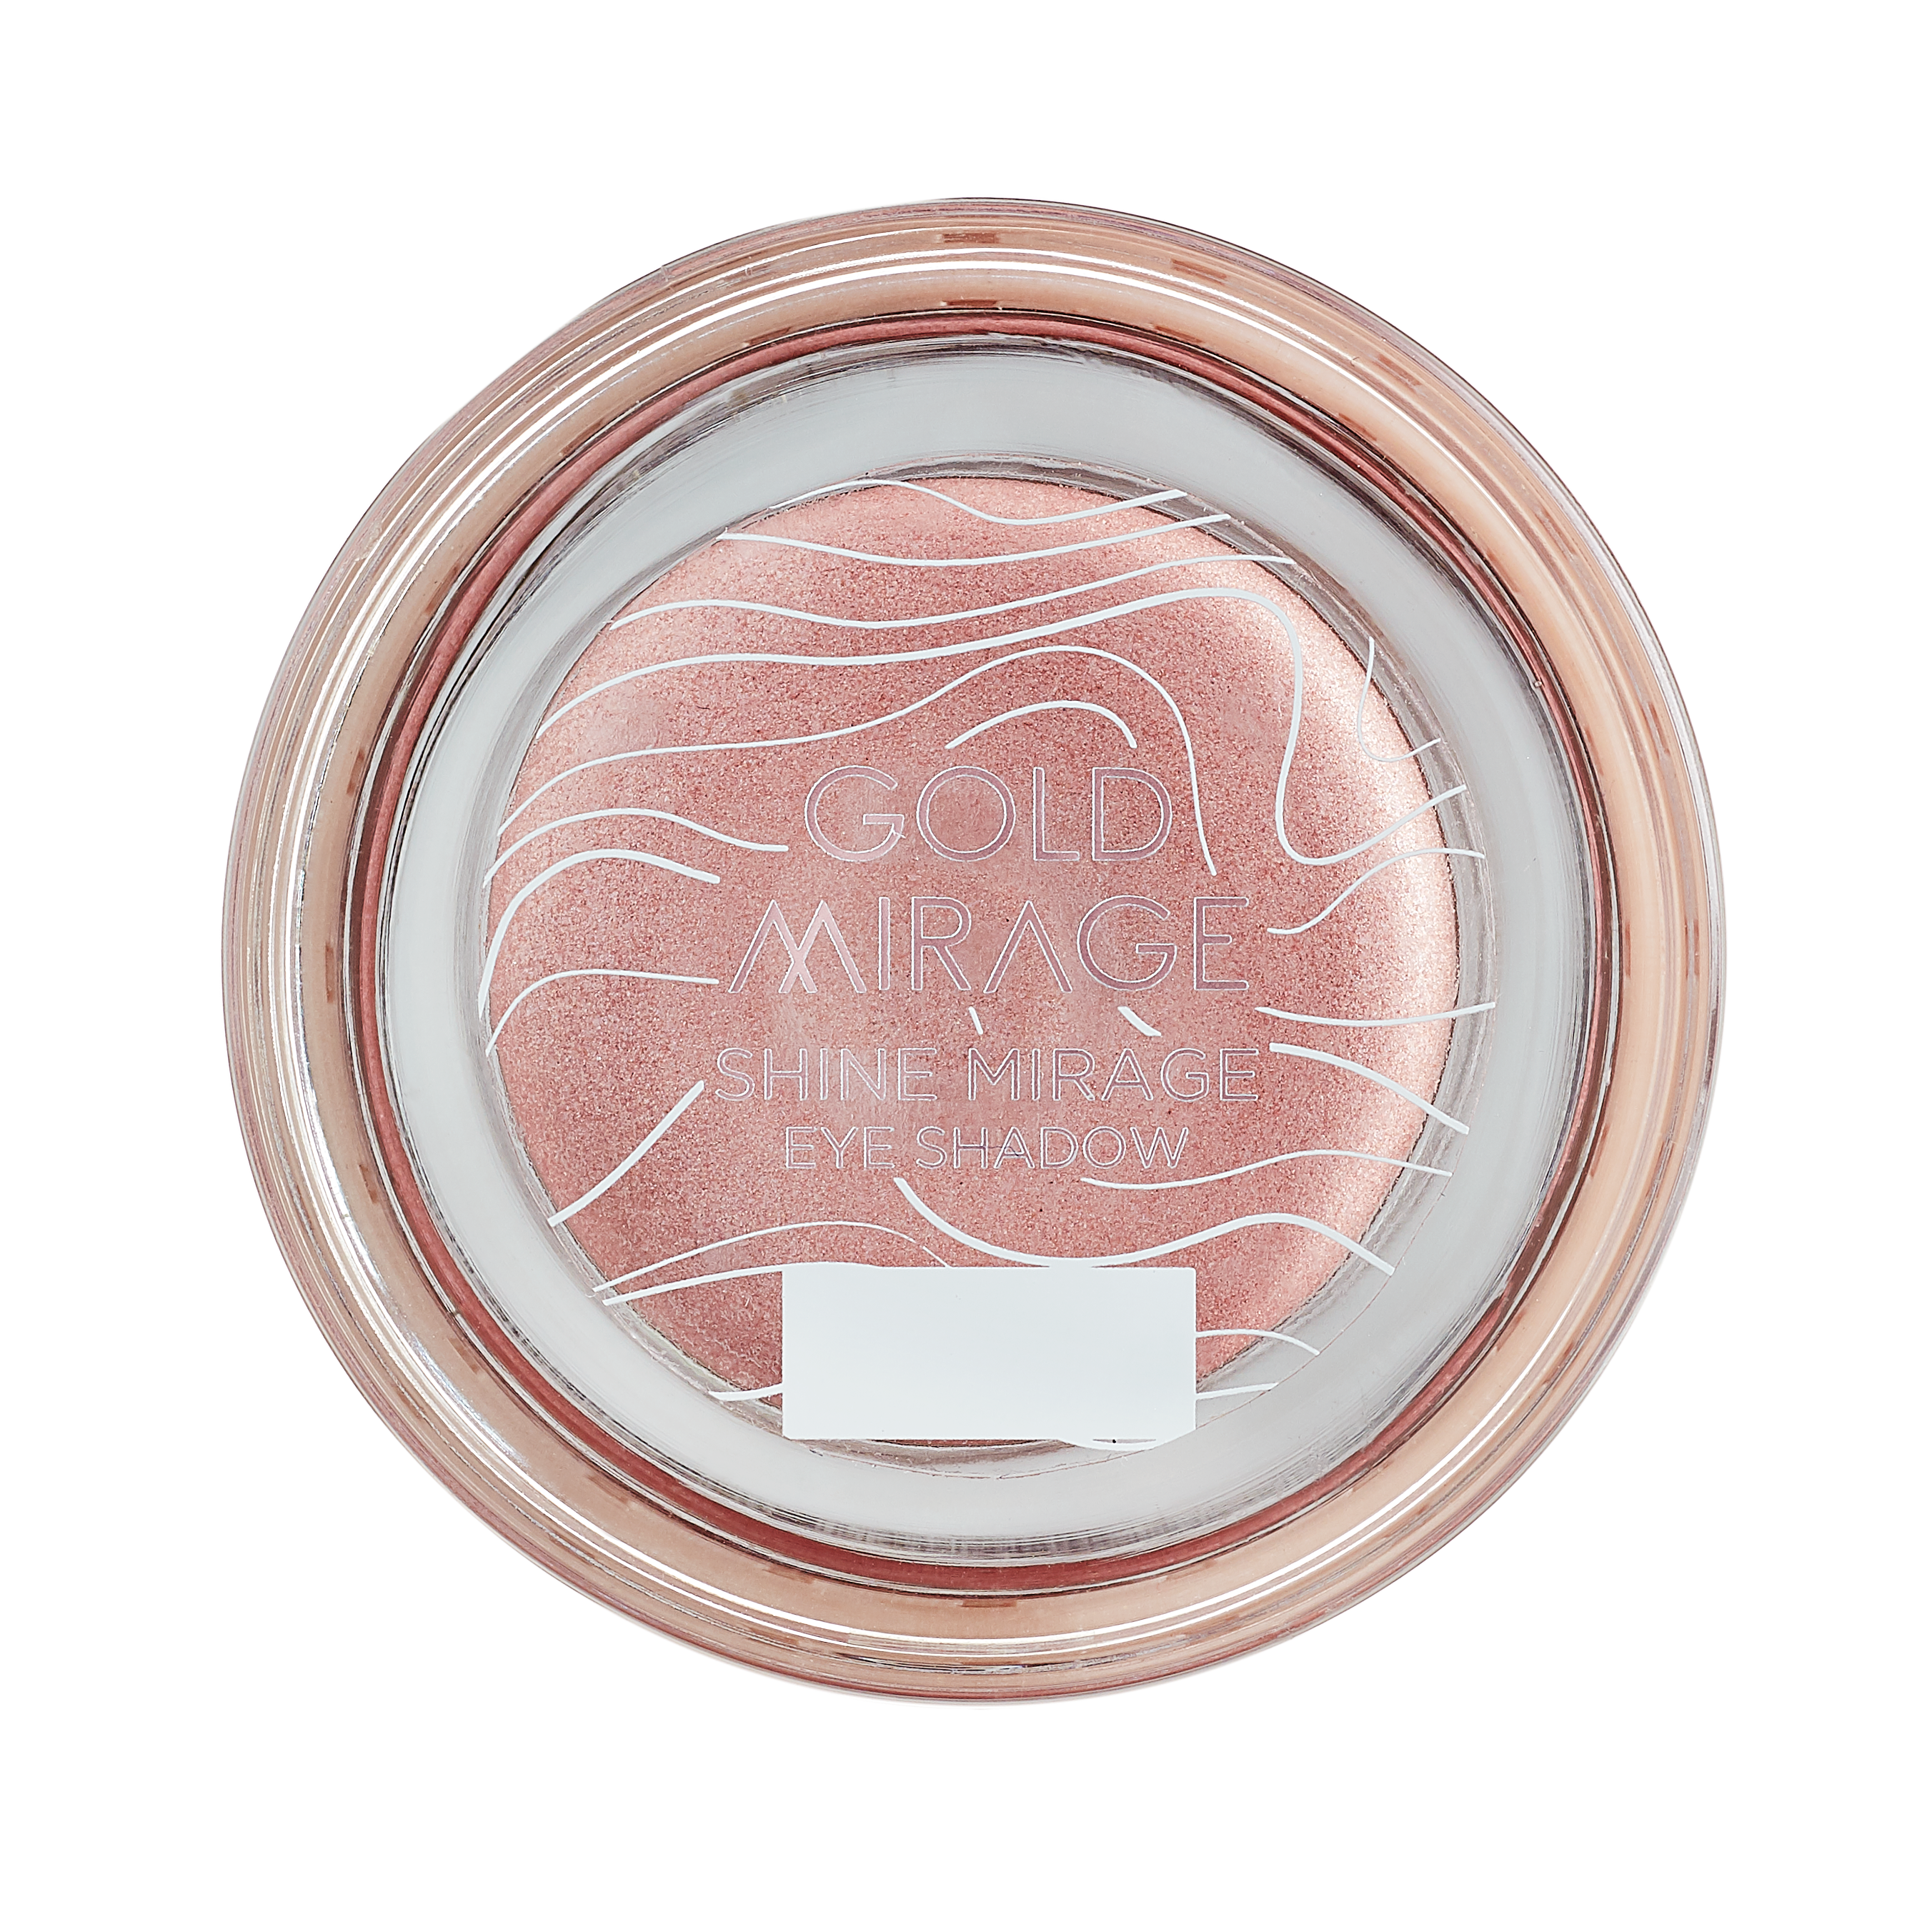 L'Oréal Gold Mirage Limited Edition Collectie - Shine Mirage Eye Schadow - 02 Pink Quartz - Roze Oogschaduw